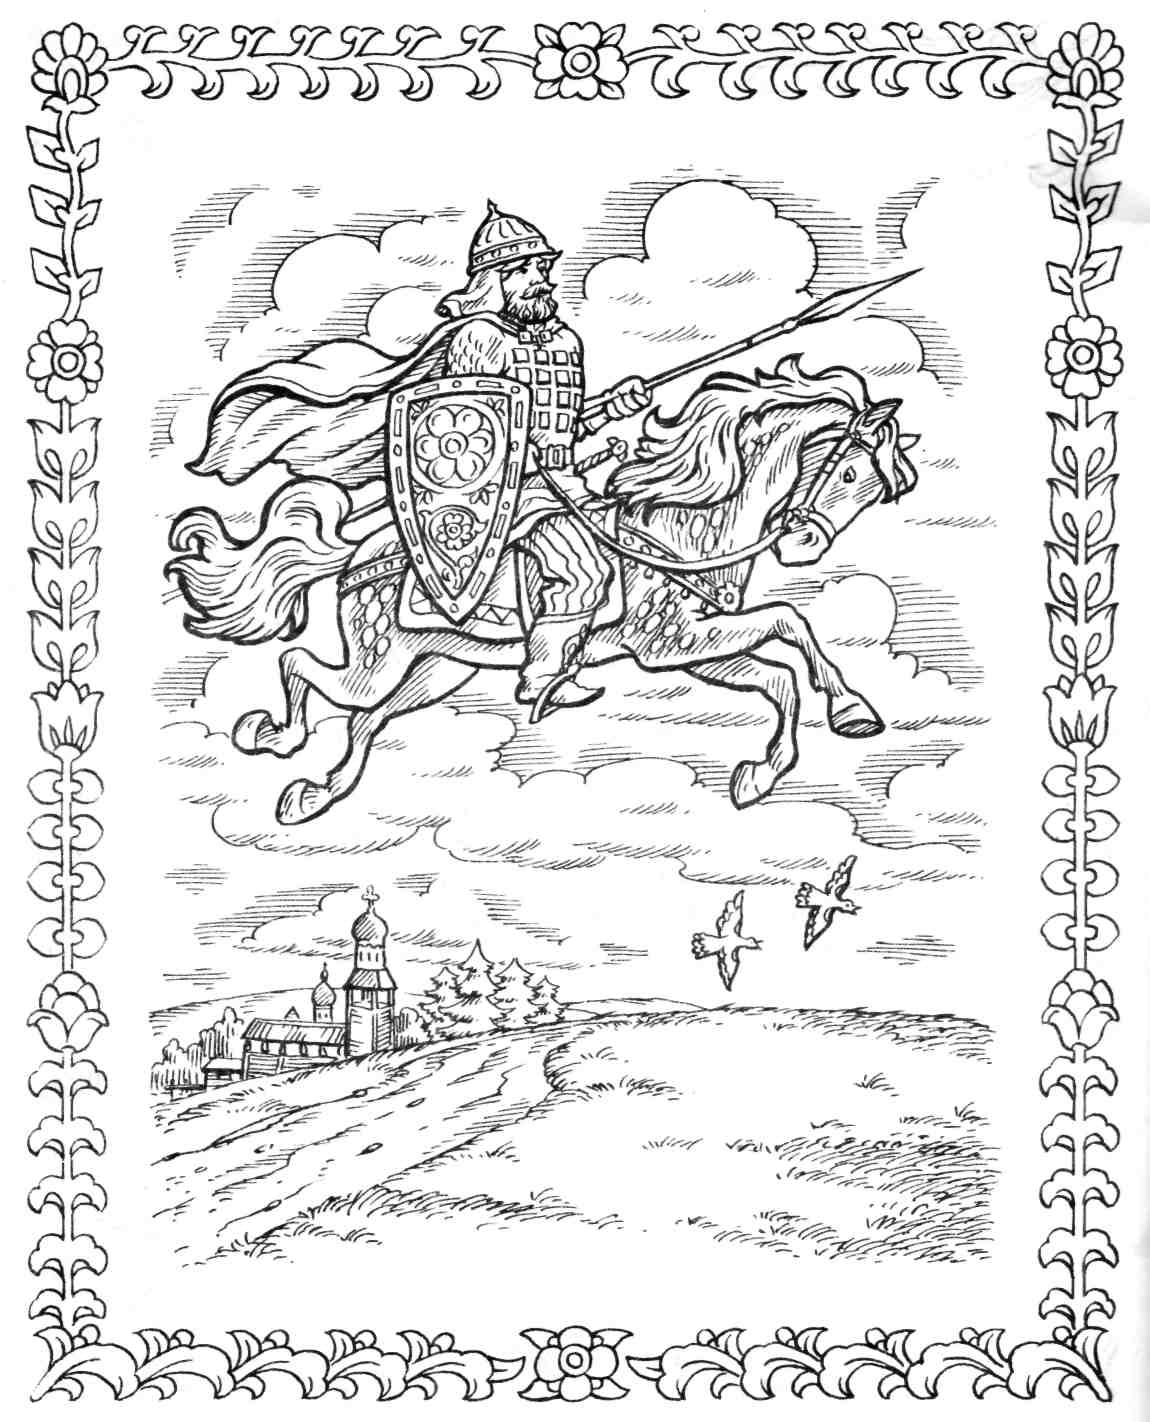 Иллюстрация Илья Муромец и Святогор